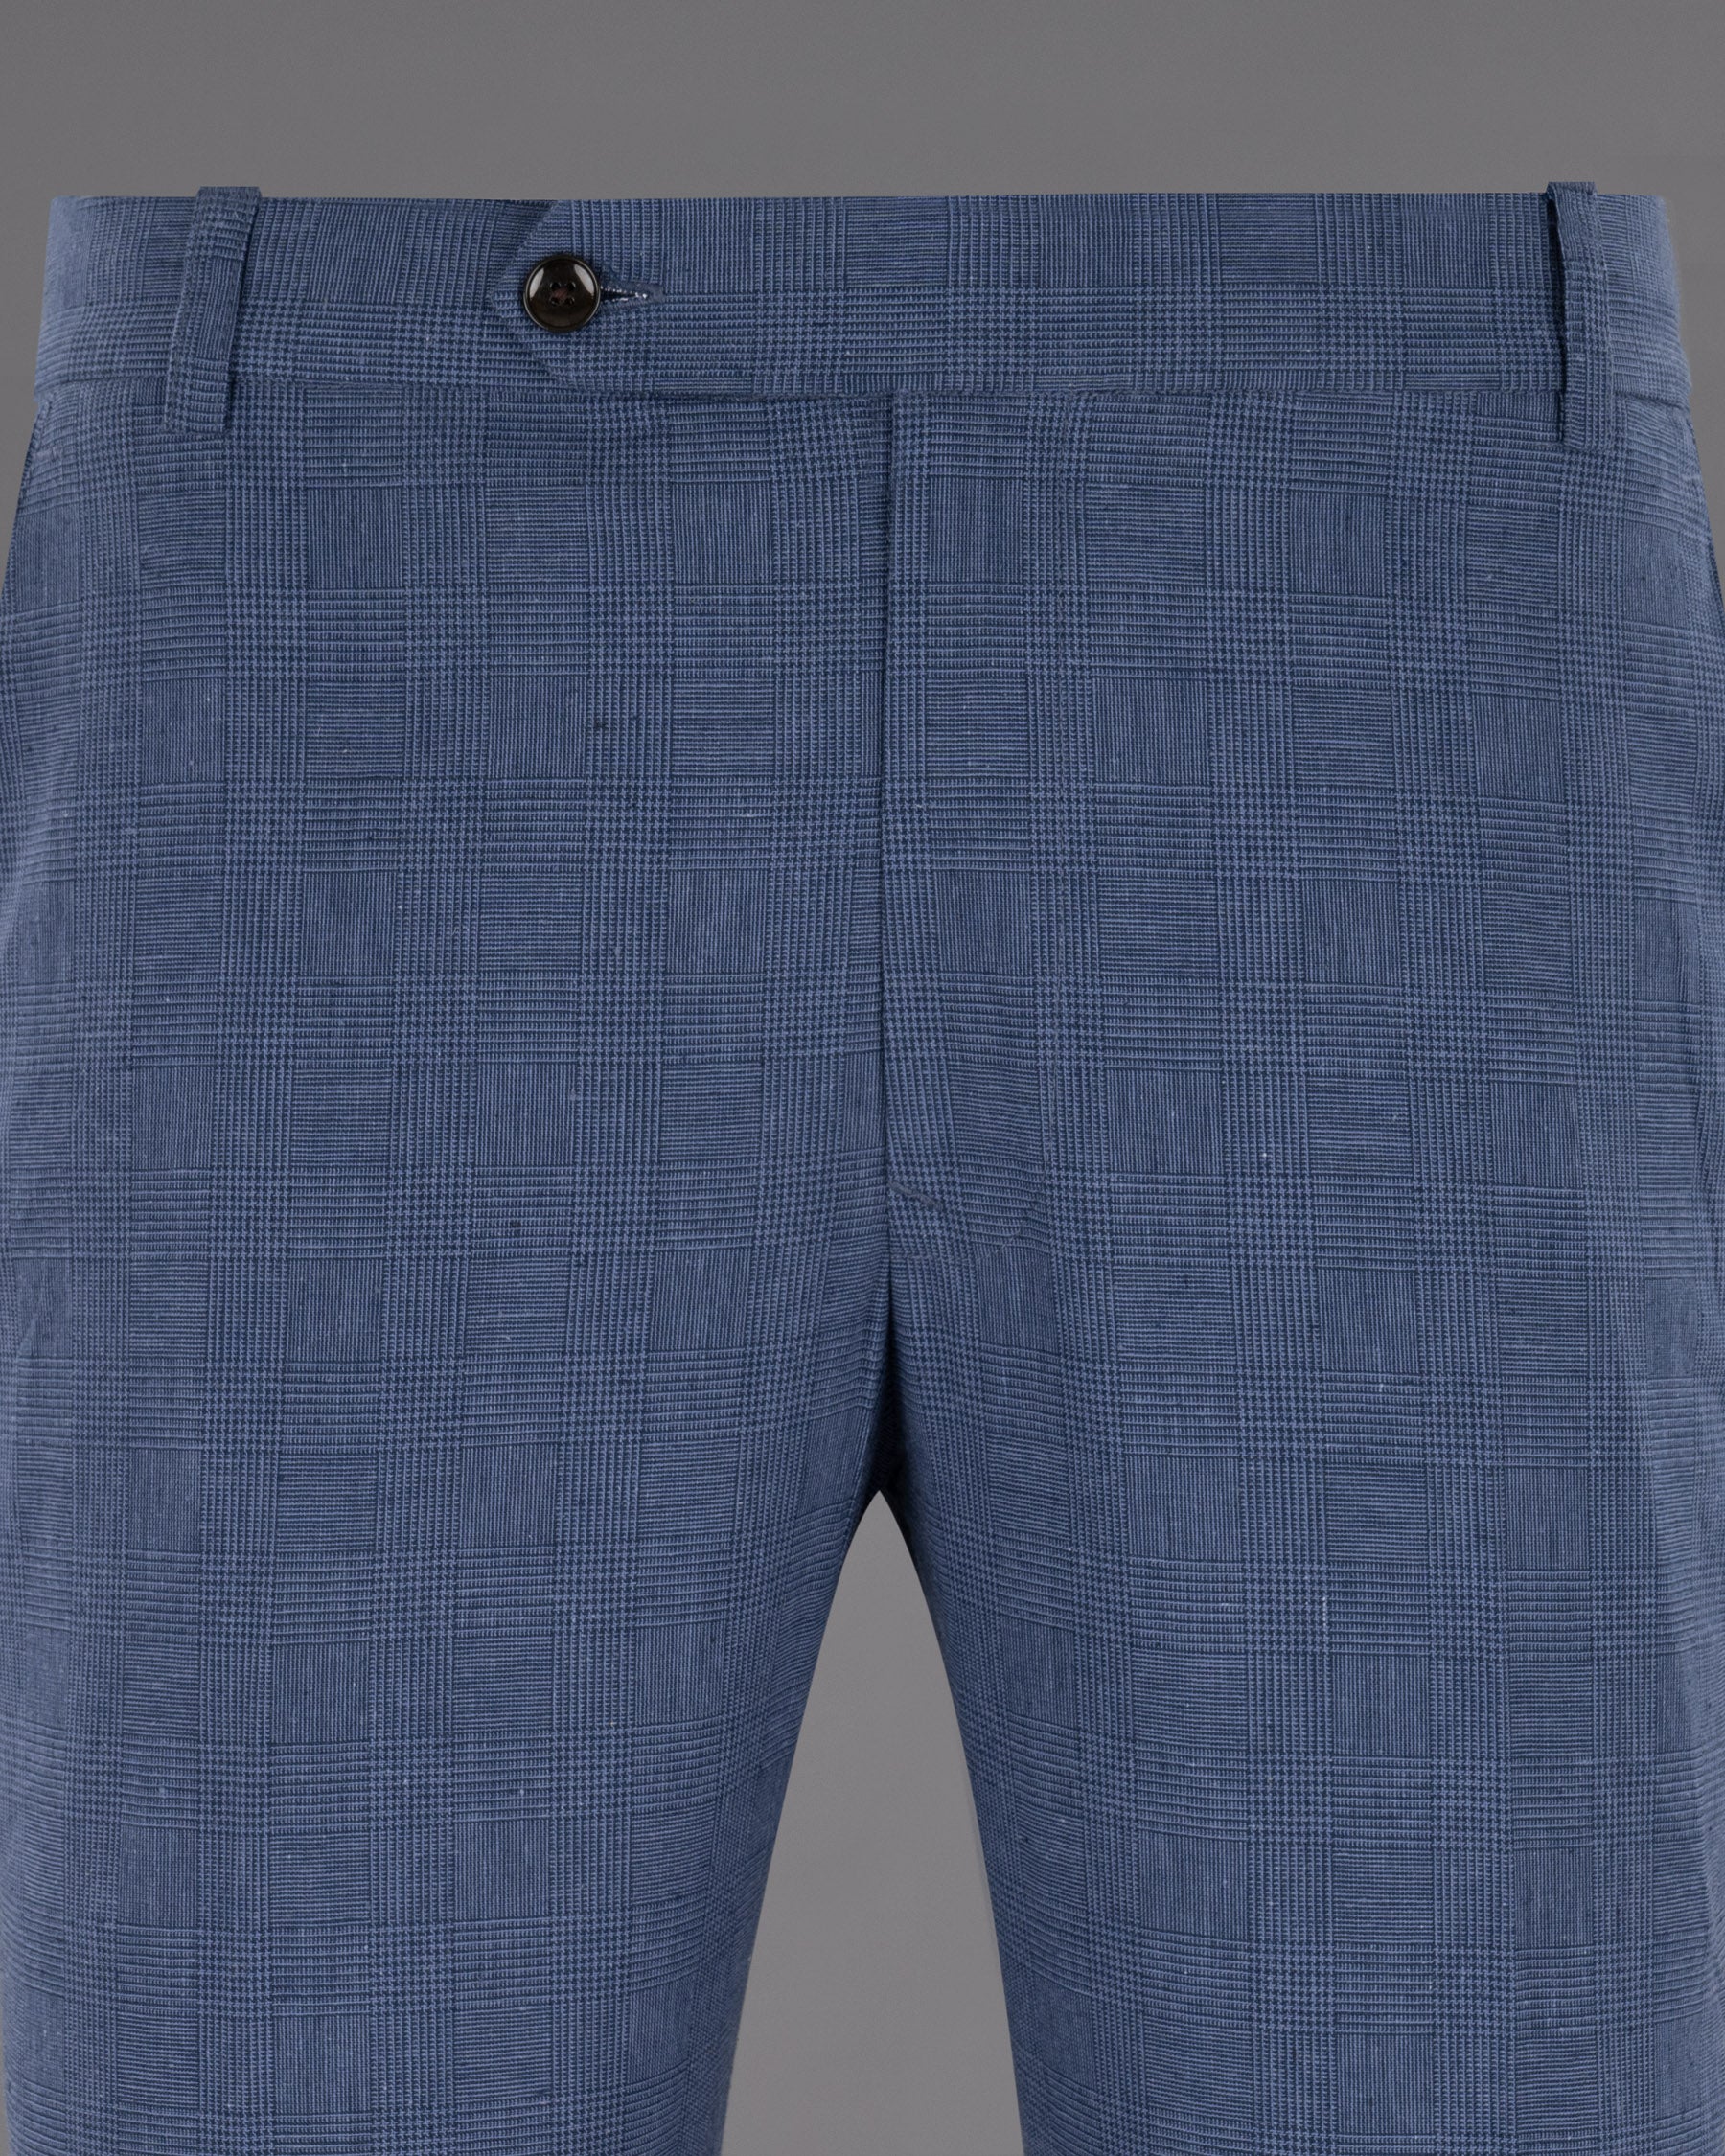 Fiord Blue Subtle Plaid Premium Cotton Pant T1229-36, T1229-38, T1229-40, T1229-42, T1229-44, T1229-28, T1229-30, T1229-32, T1229-34